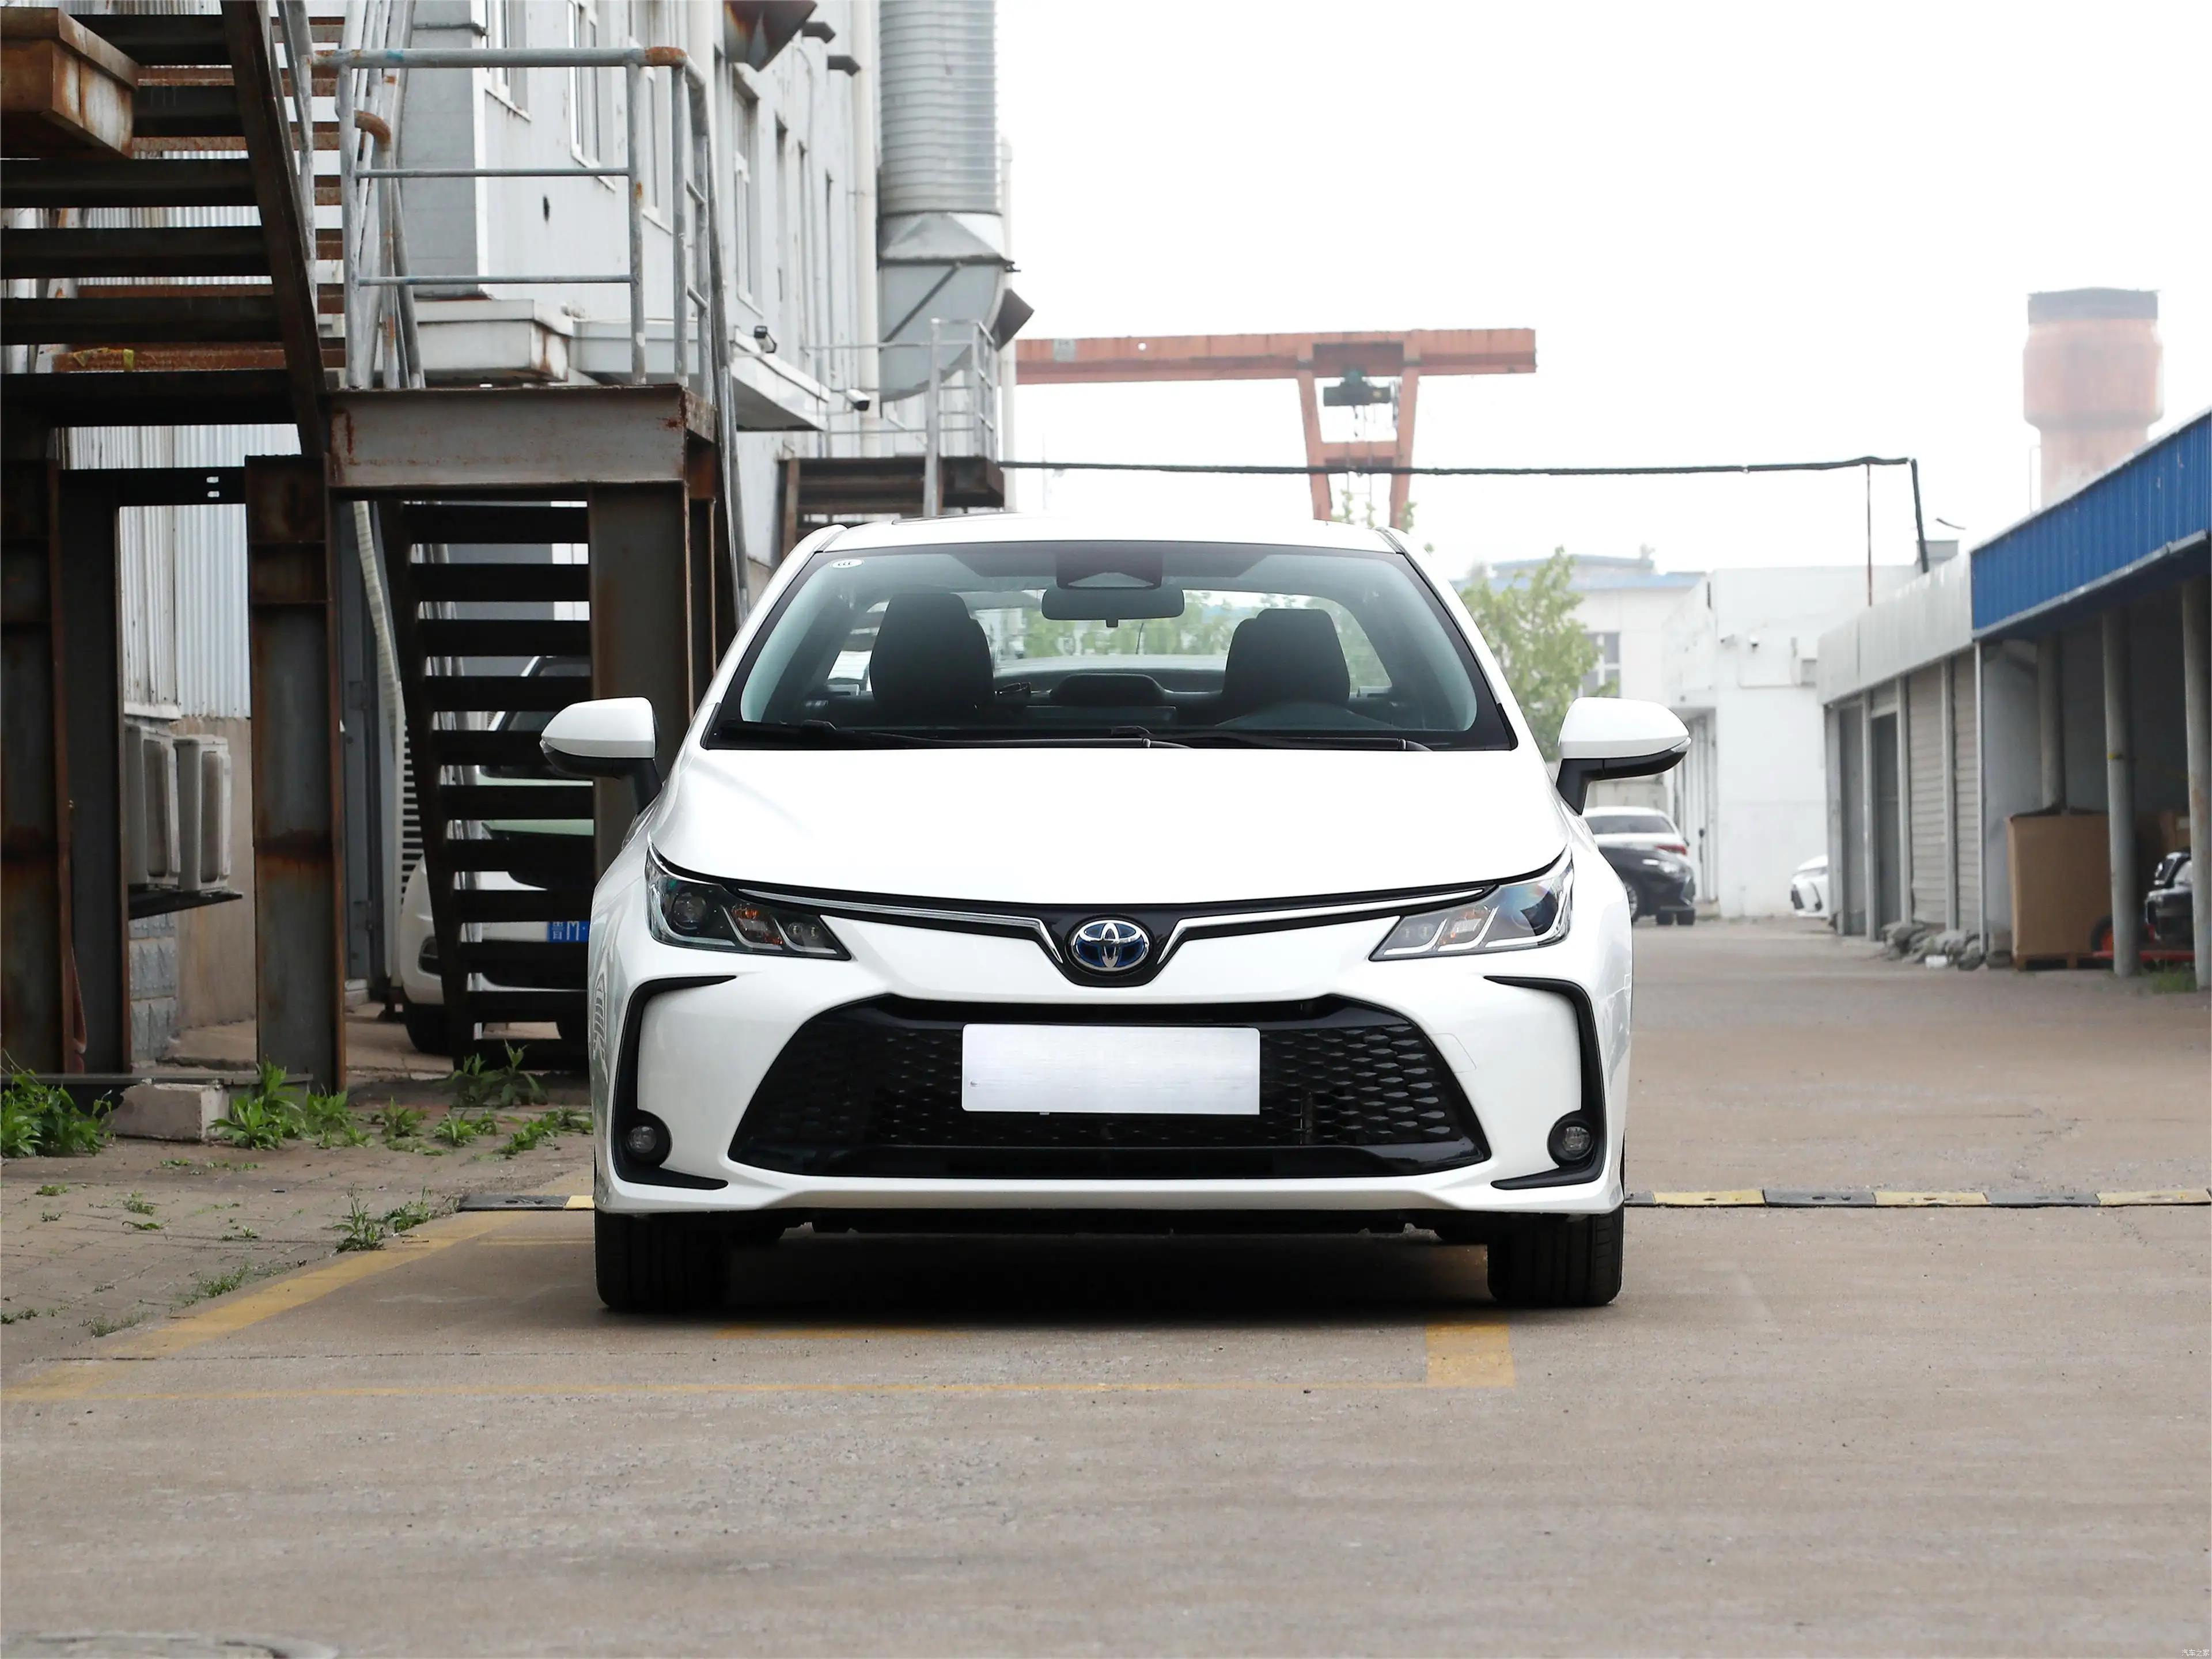 Nuovo veicolo elettrico ibrido energetico 1.5L 1.8L 1.2T E-CVT Toyota Corolla a sinistra svolta 2023 2022 2019 nuova auto usata